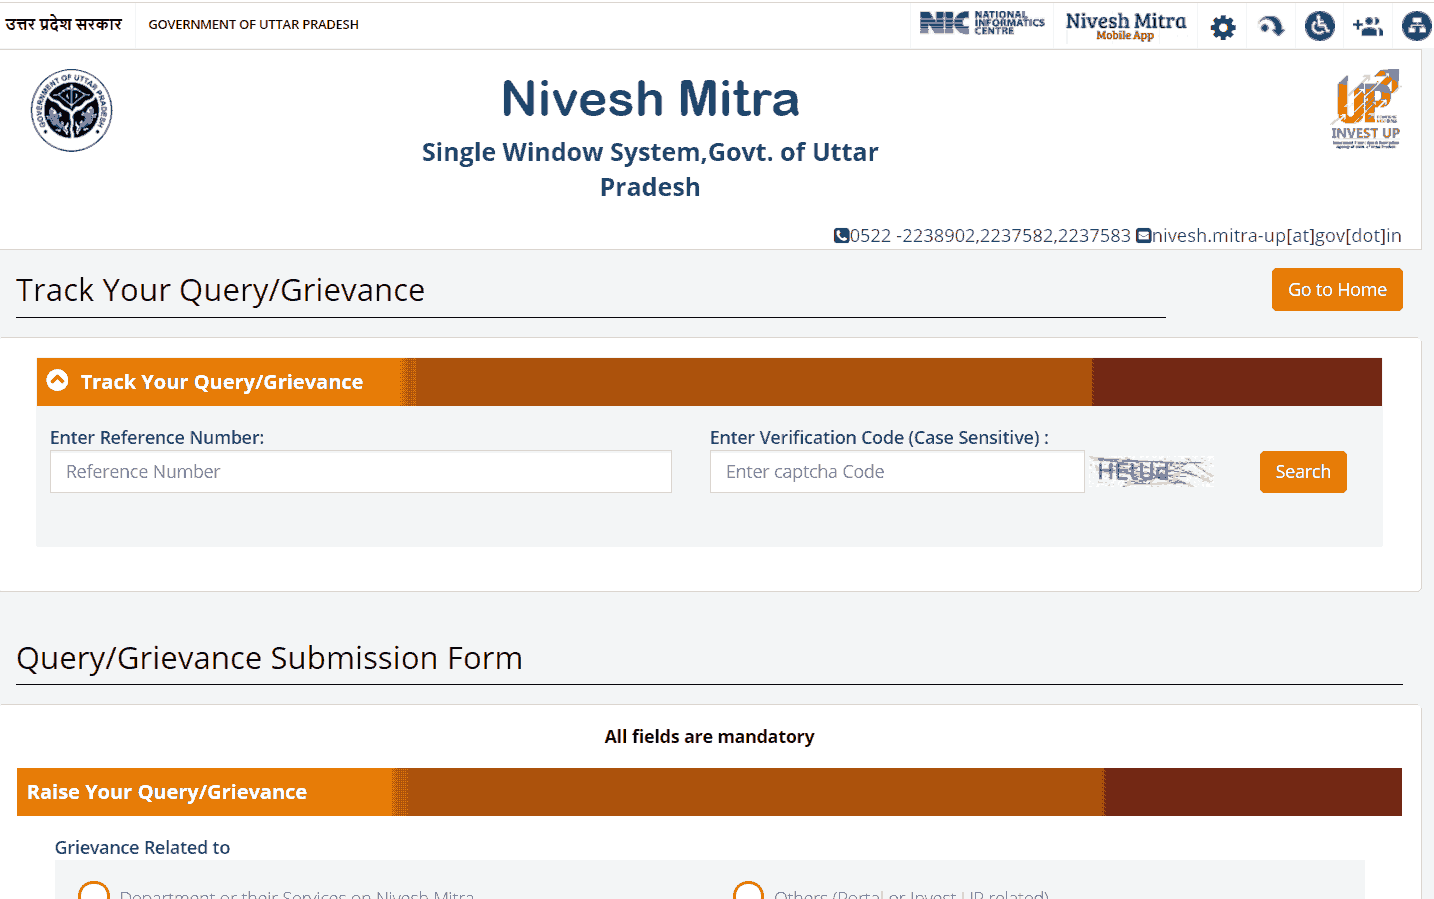 UP Nivesh Mitra